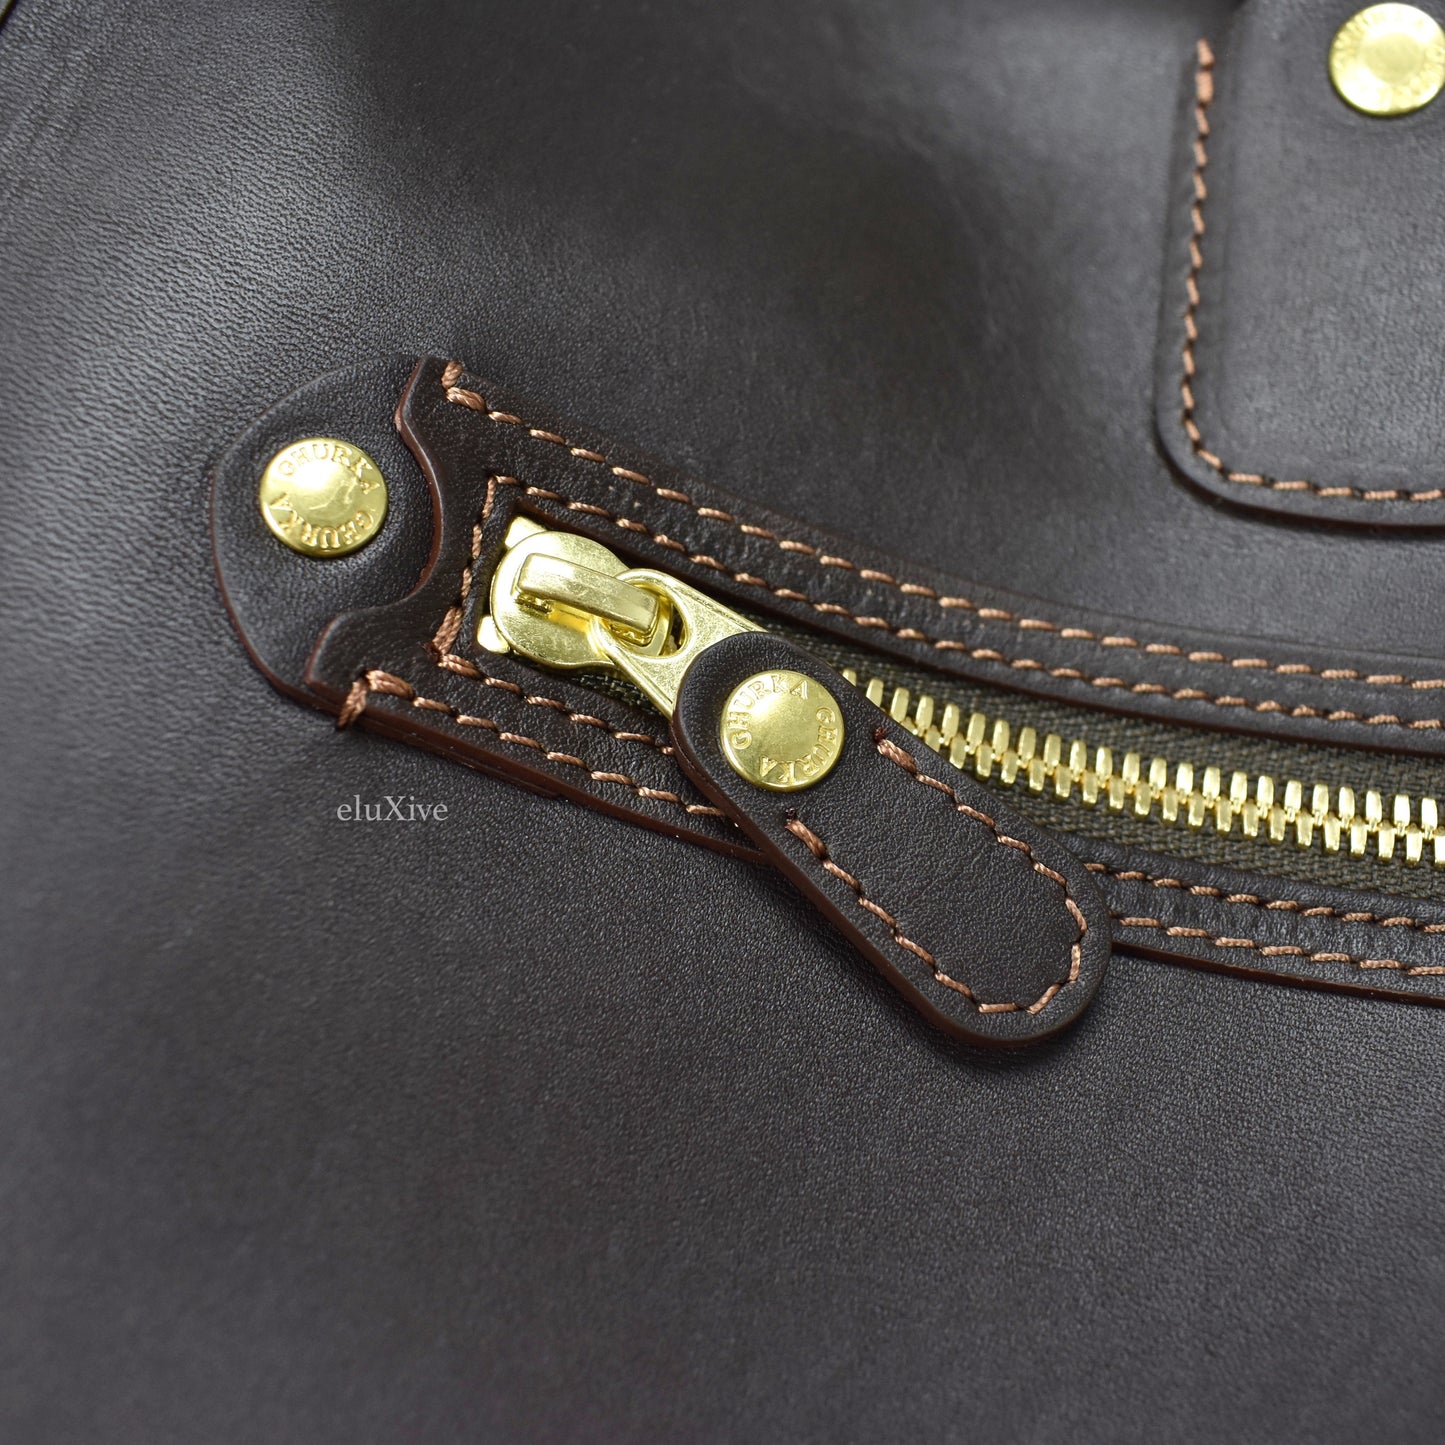 Ghurka - Leather Vestry No. 152 Bag (Walnut)